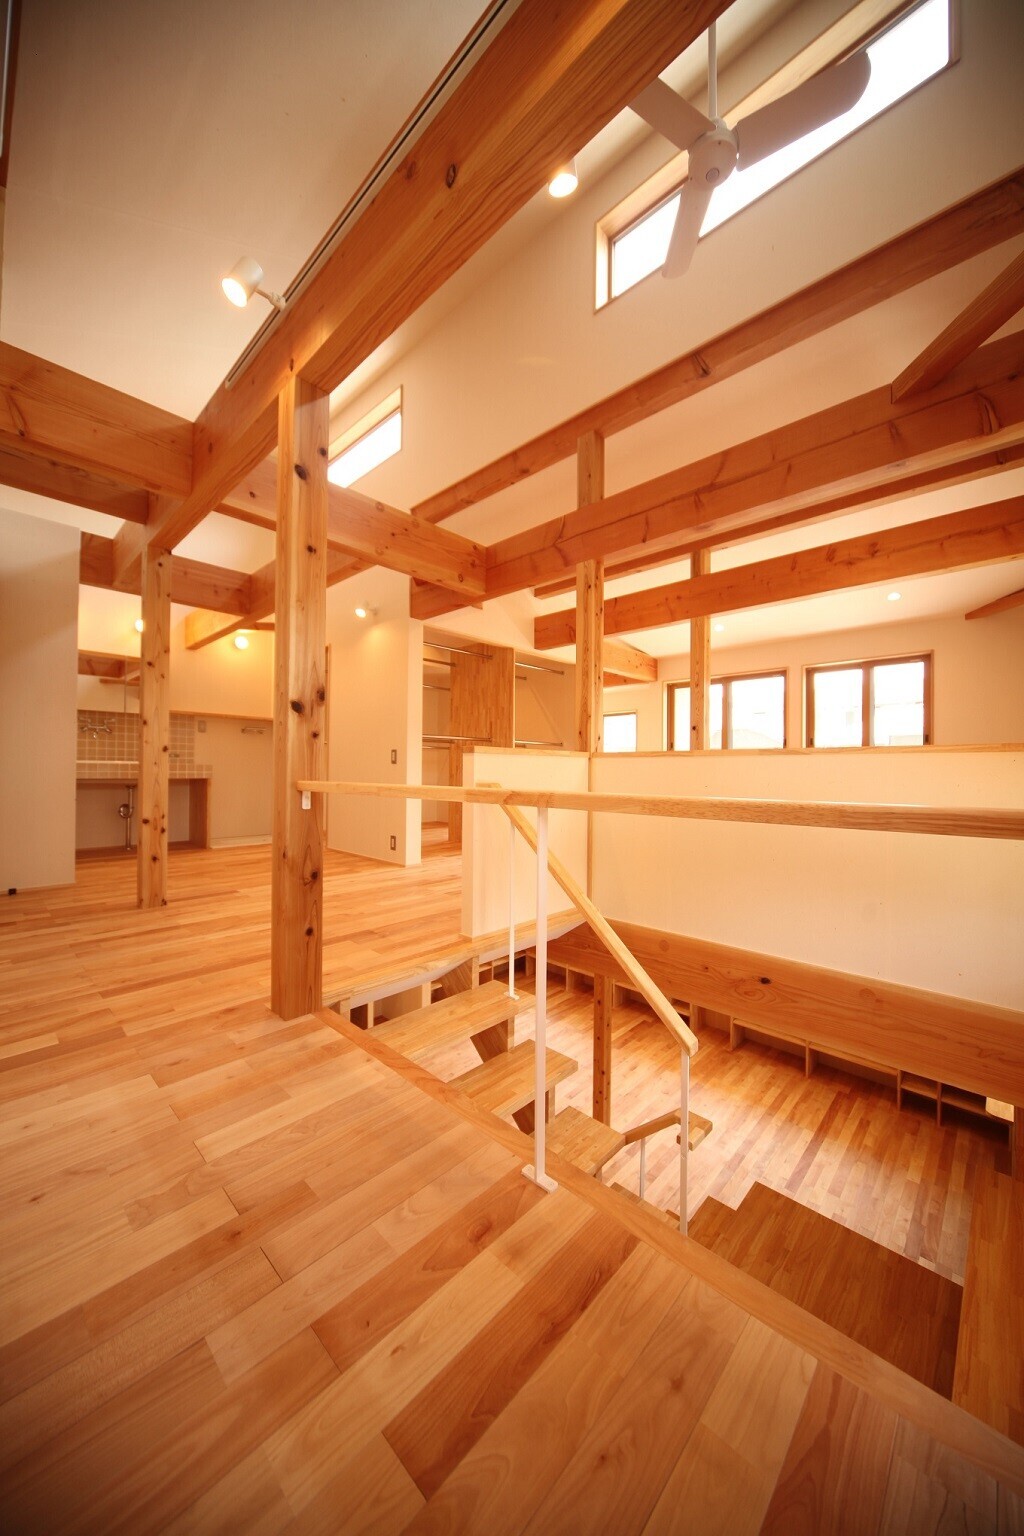 開放的大空間自然素材の家の建築事例写真